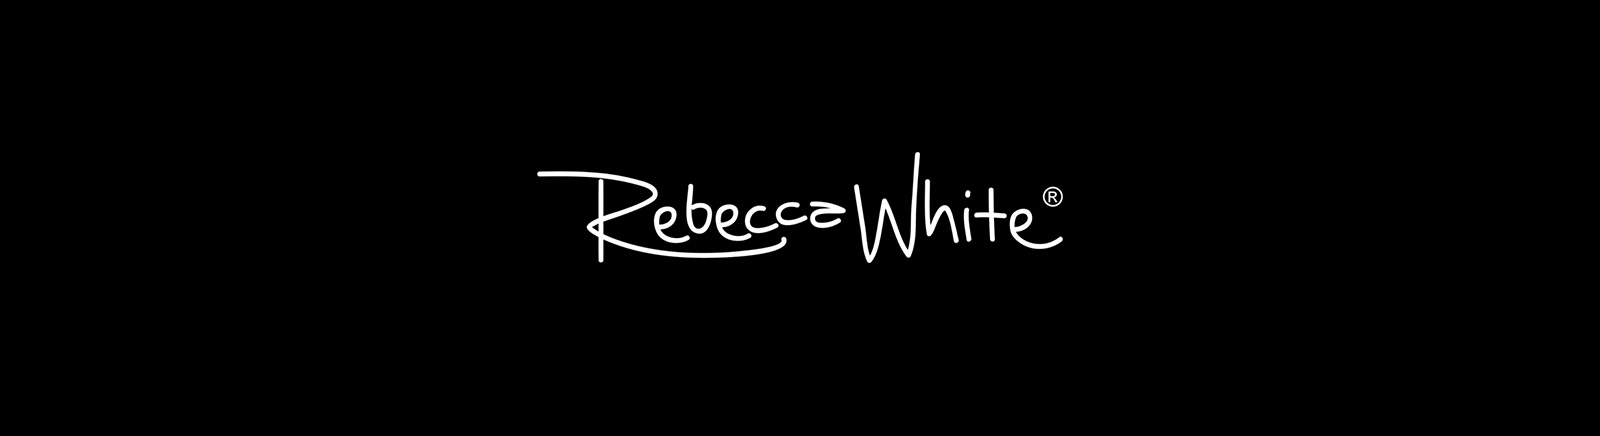 Rebecca White Schuhe online kaufen im Juppen Shop